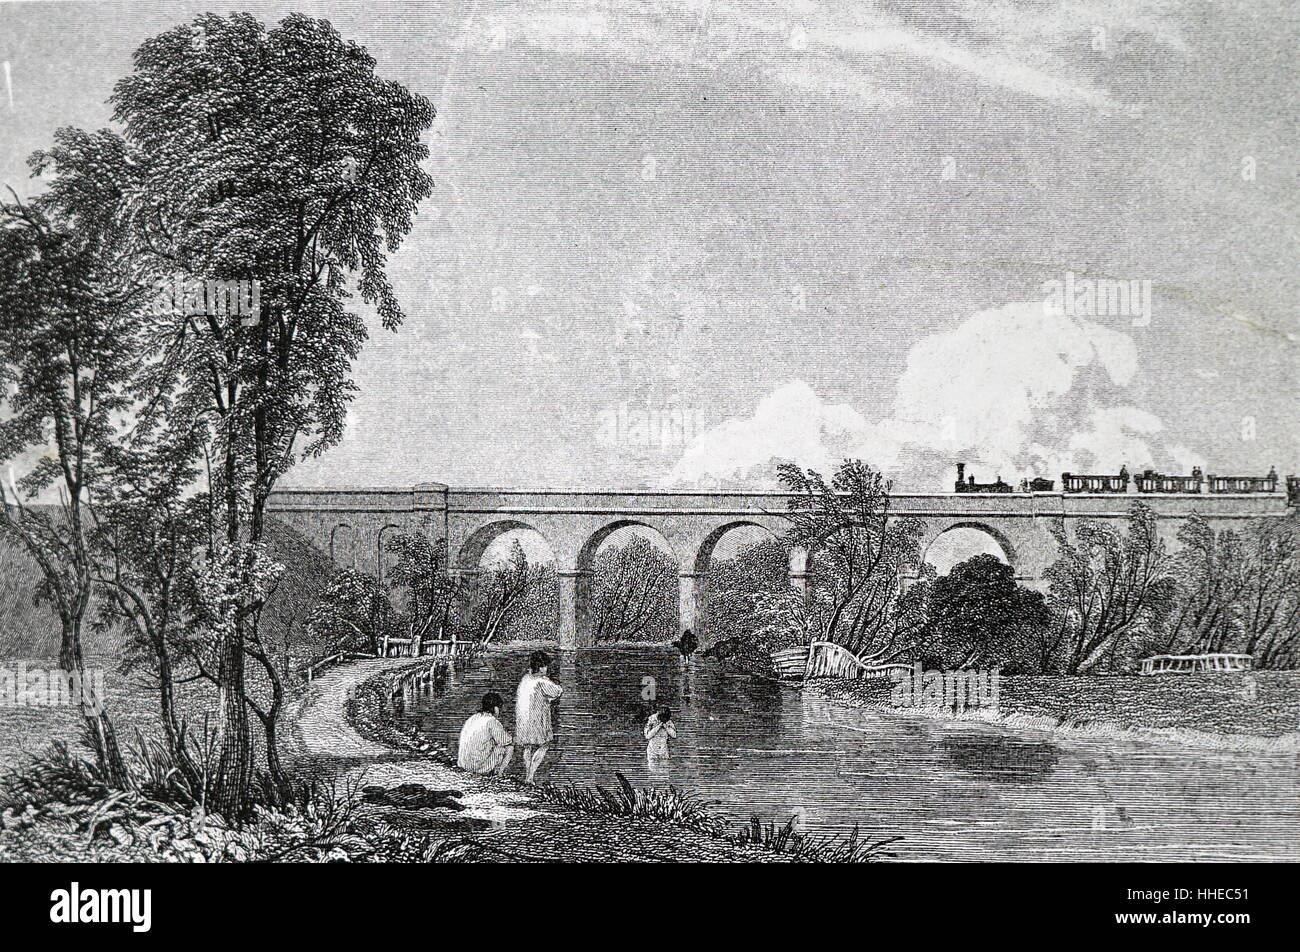 London und Birmingham Gleis 1839. Bahnübergang die fünf Bogen Viadukt über den Fluss Colne, in der Nähe von Watford, Hertfordshire, England, im Jahr 1837 gebaut. Stockfoto